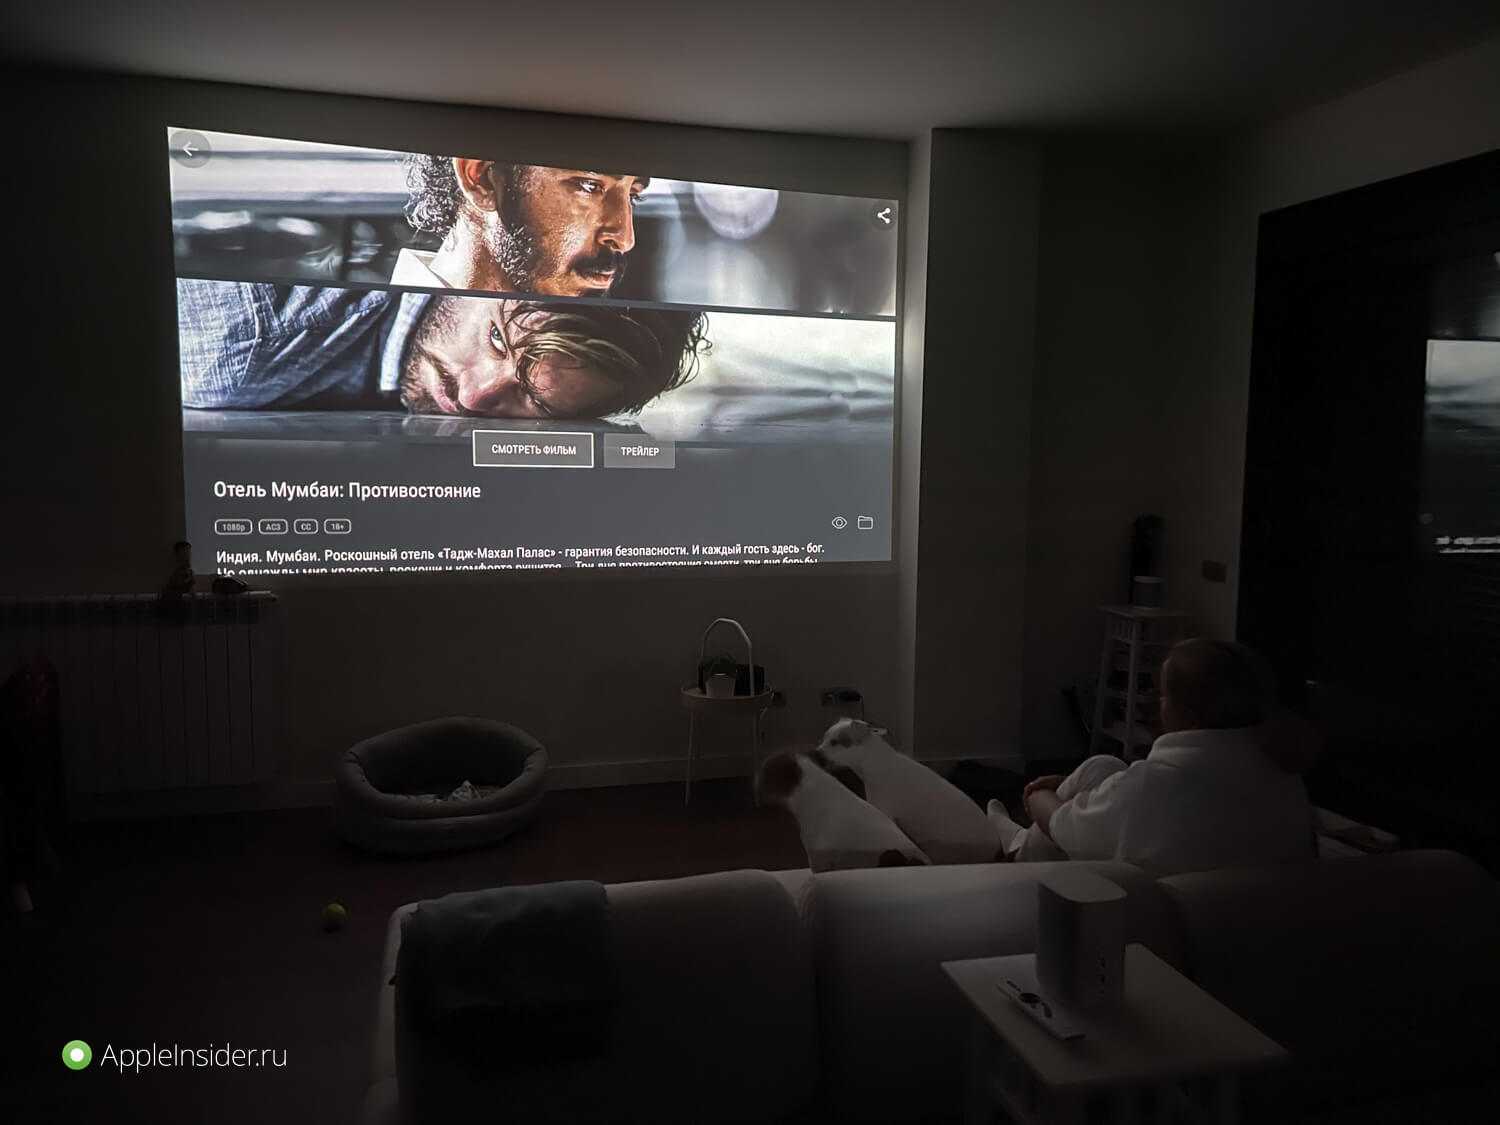 Есть ли смысл покупать проектор, если большие телевизоры сильно подешевели